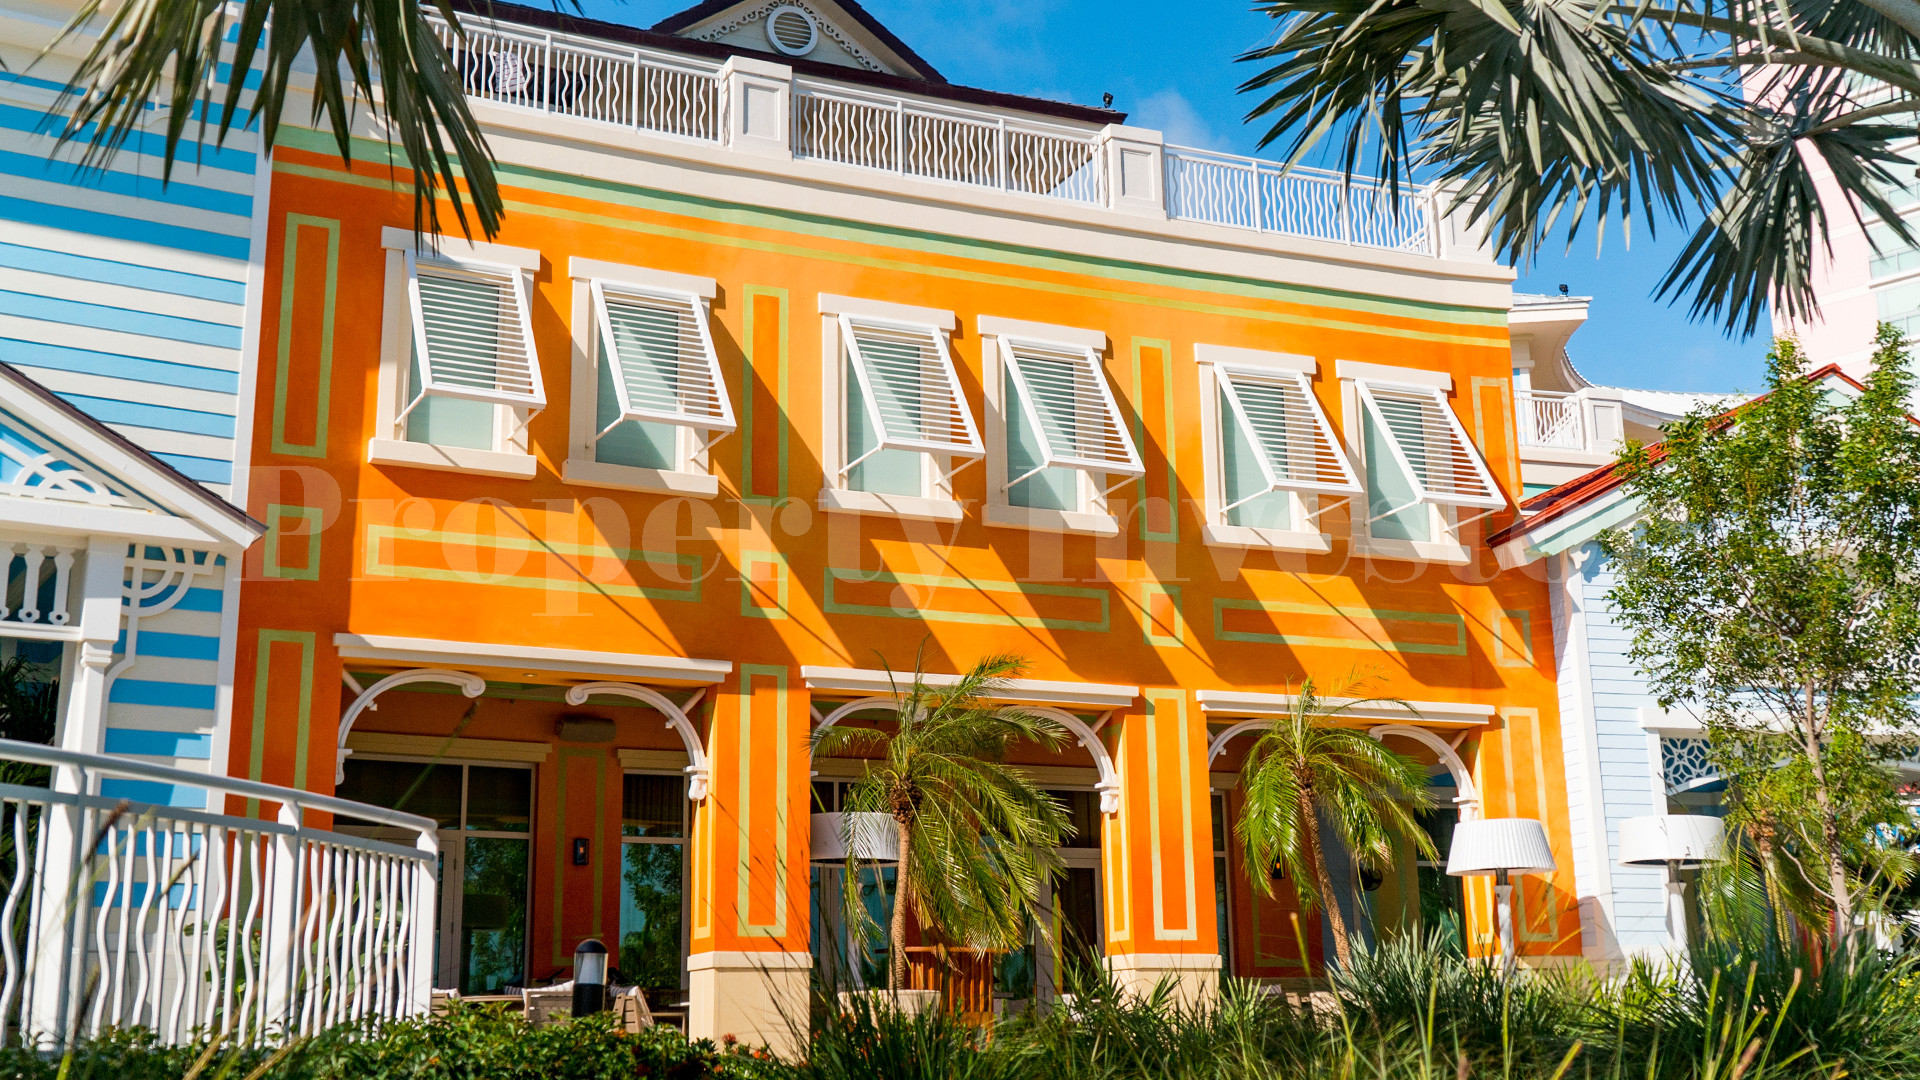 Продаются резиденции с 3 спальнями в апарт-отеле на Багамах (Residence 225)